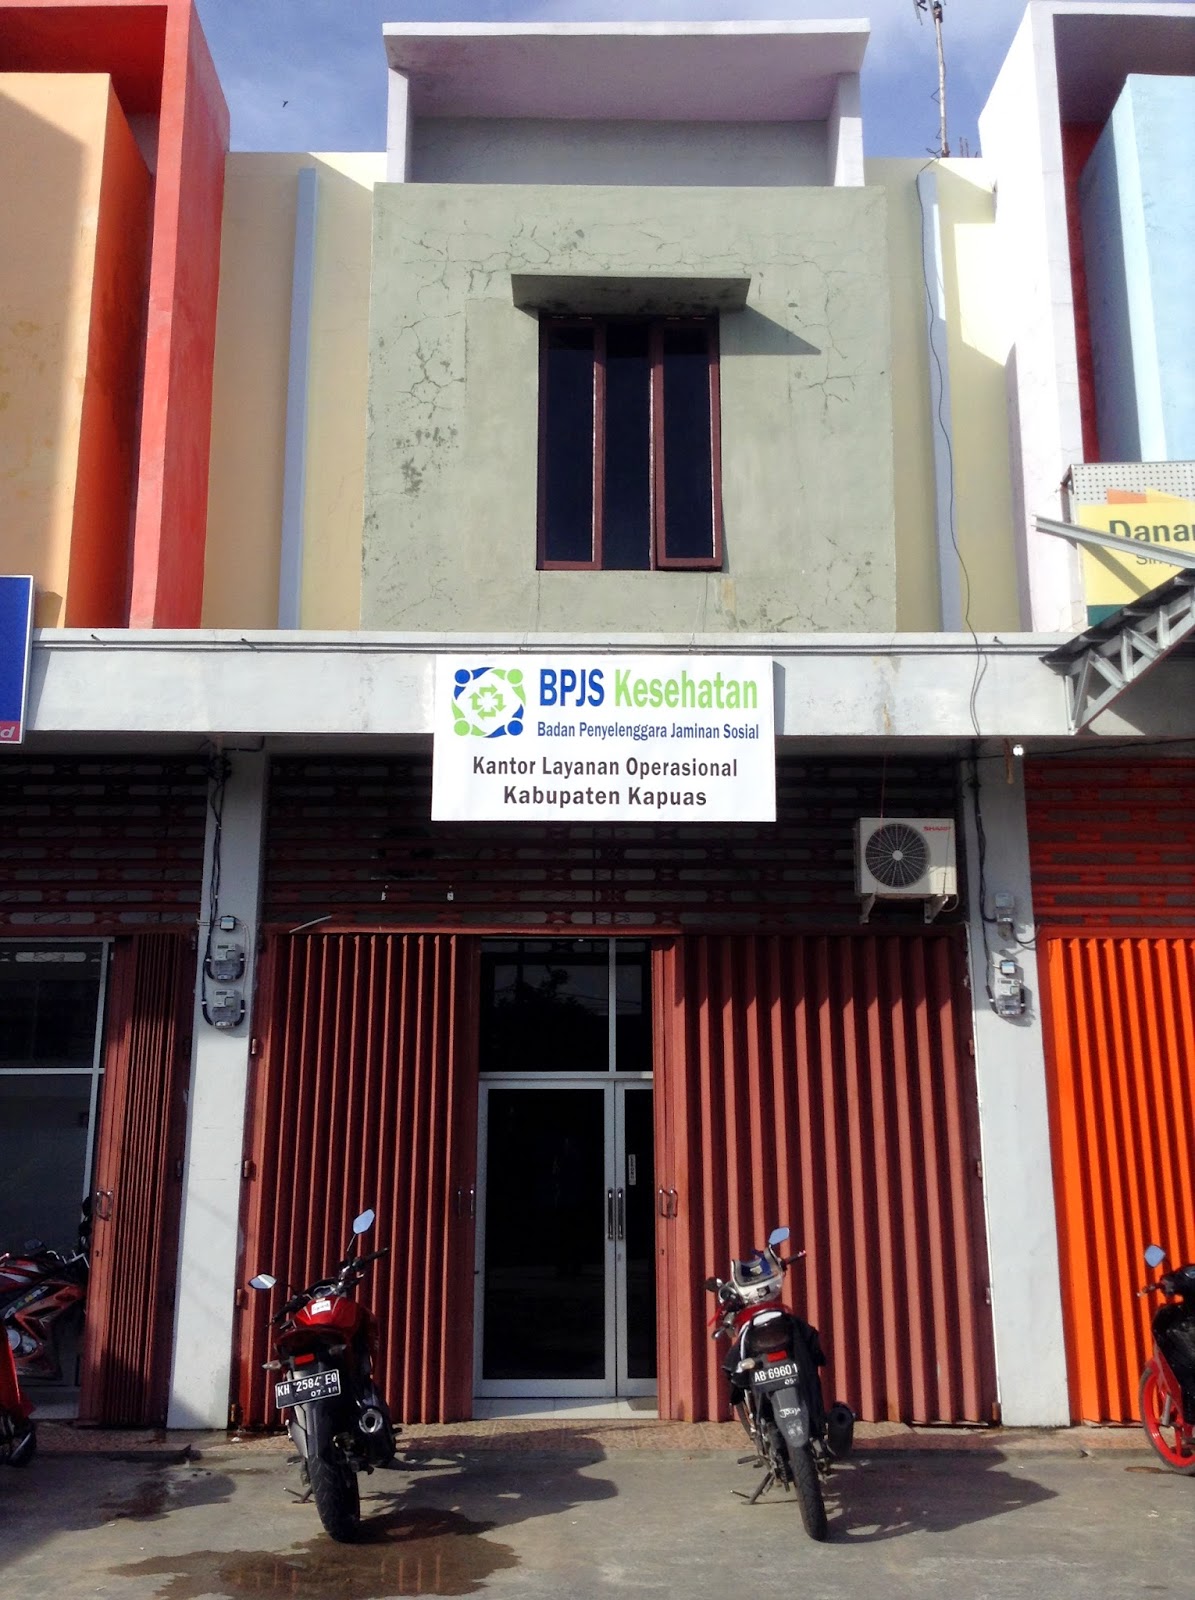 Kantor Layanan Operasional Bpjs Kesehatan Kabupaten Kapuas